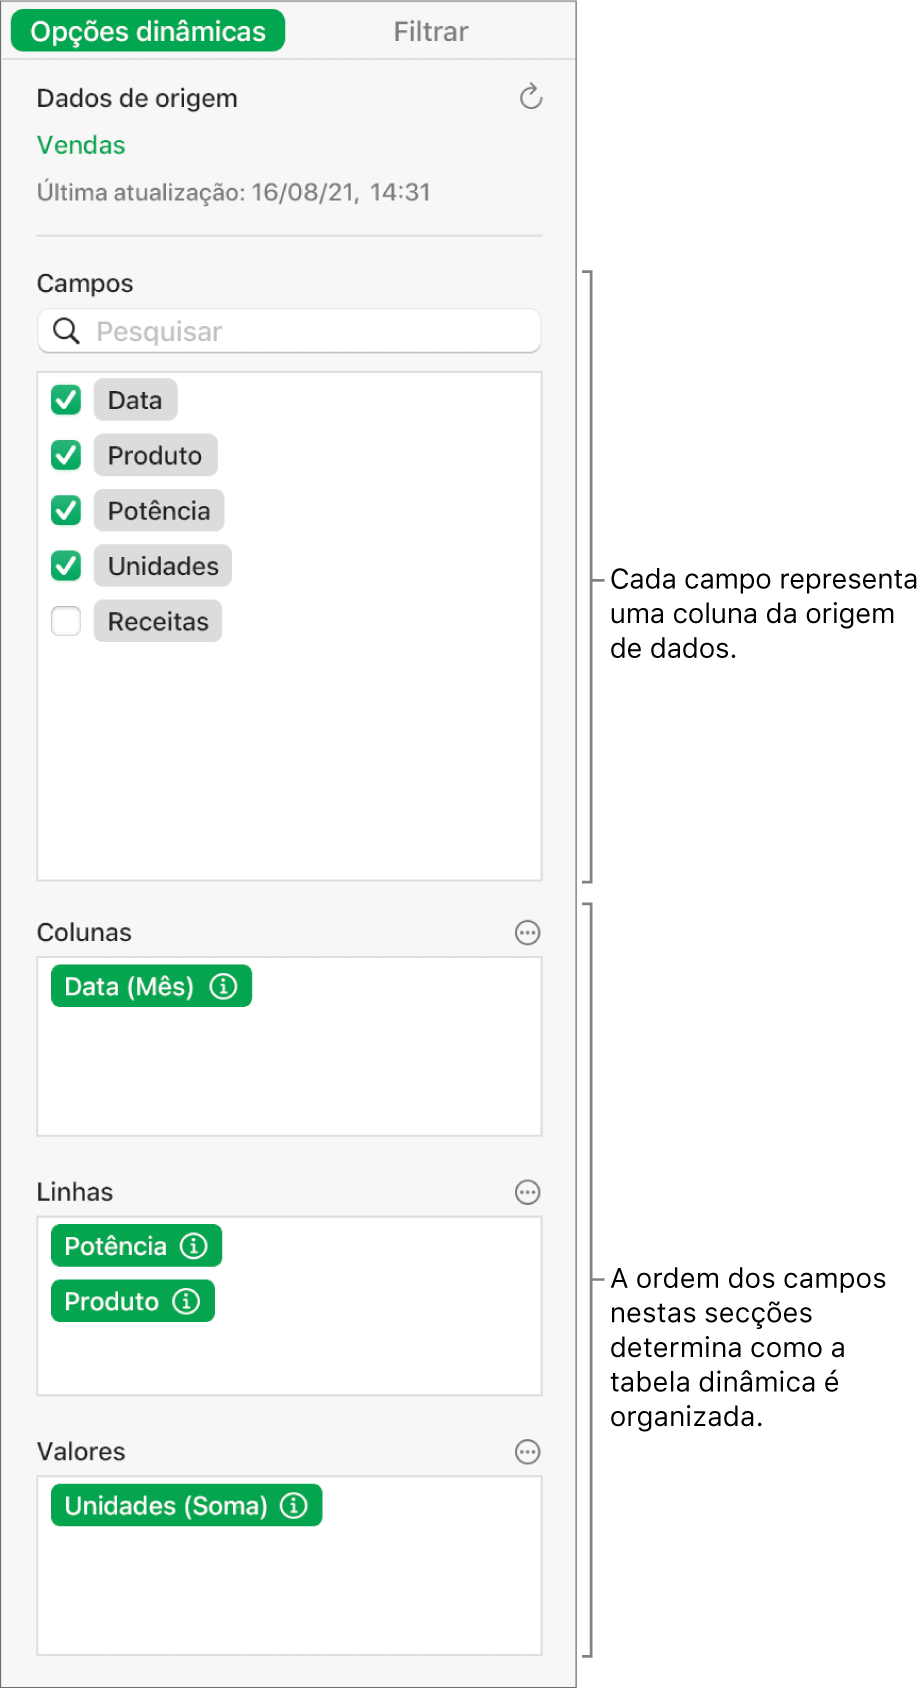 O separador “Opções dinâmicas” na barra lateral “Organizar” a mostrar campos nas secções “Colunas”, “Linhas” e “Valores”, bem como os controlos para editar os campos e atualizar a tabela dinâmica.